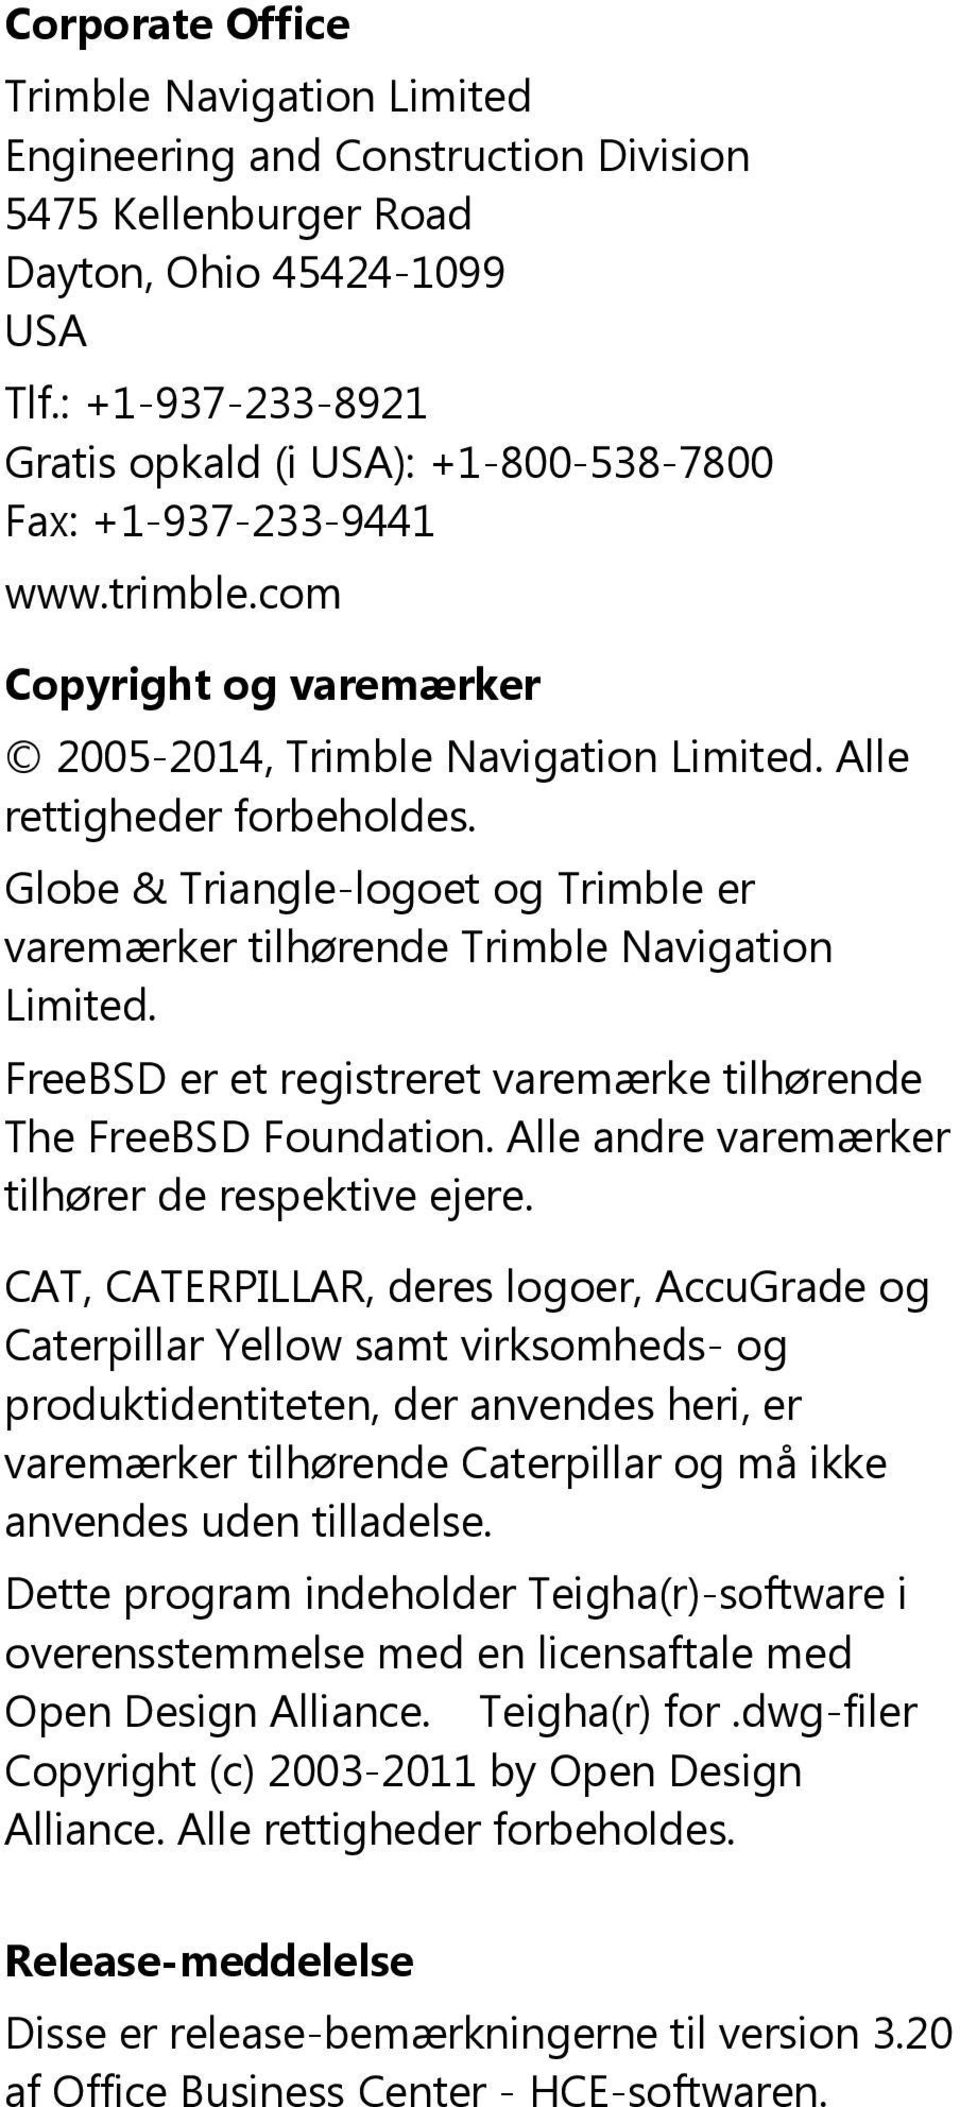 Globe & Triangle-logoet og Trimble er varemærker tilhørende Trimble Navigation Limited. FreeBSD er et registreret varemærke tilhørende The FreeBSD Foundation.